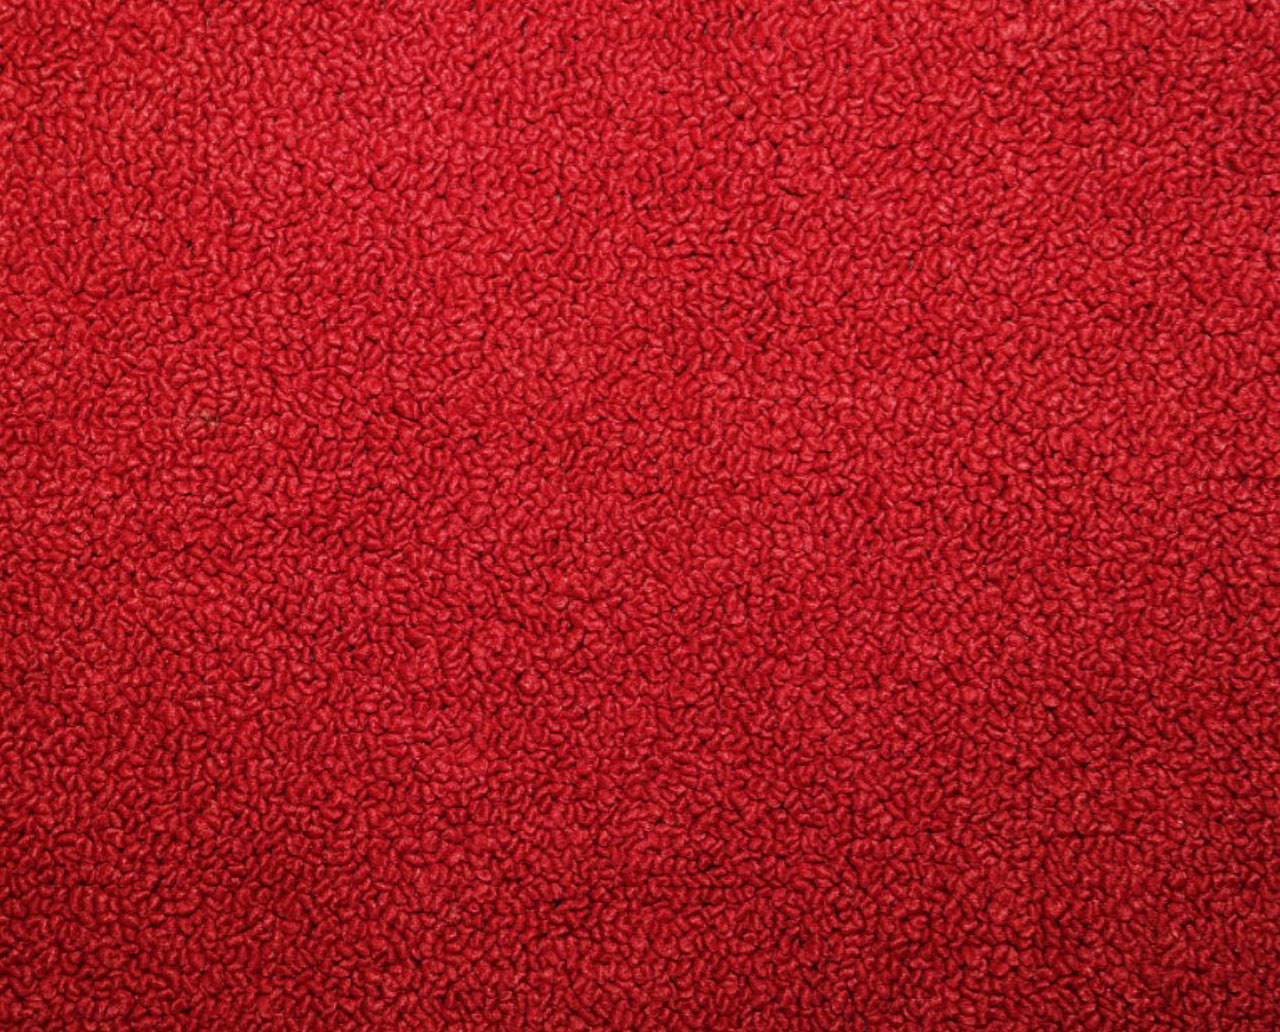 Holden Premier HG Premier Wagon 12R Baroque Red Carpet (Image 1 of 1)